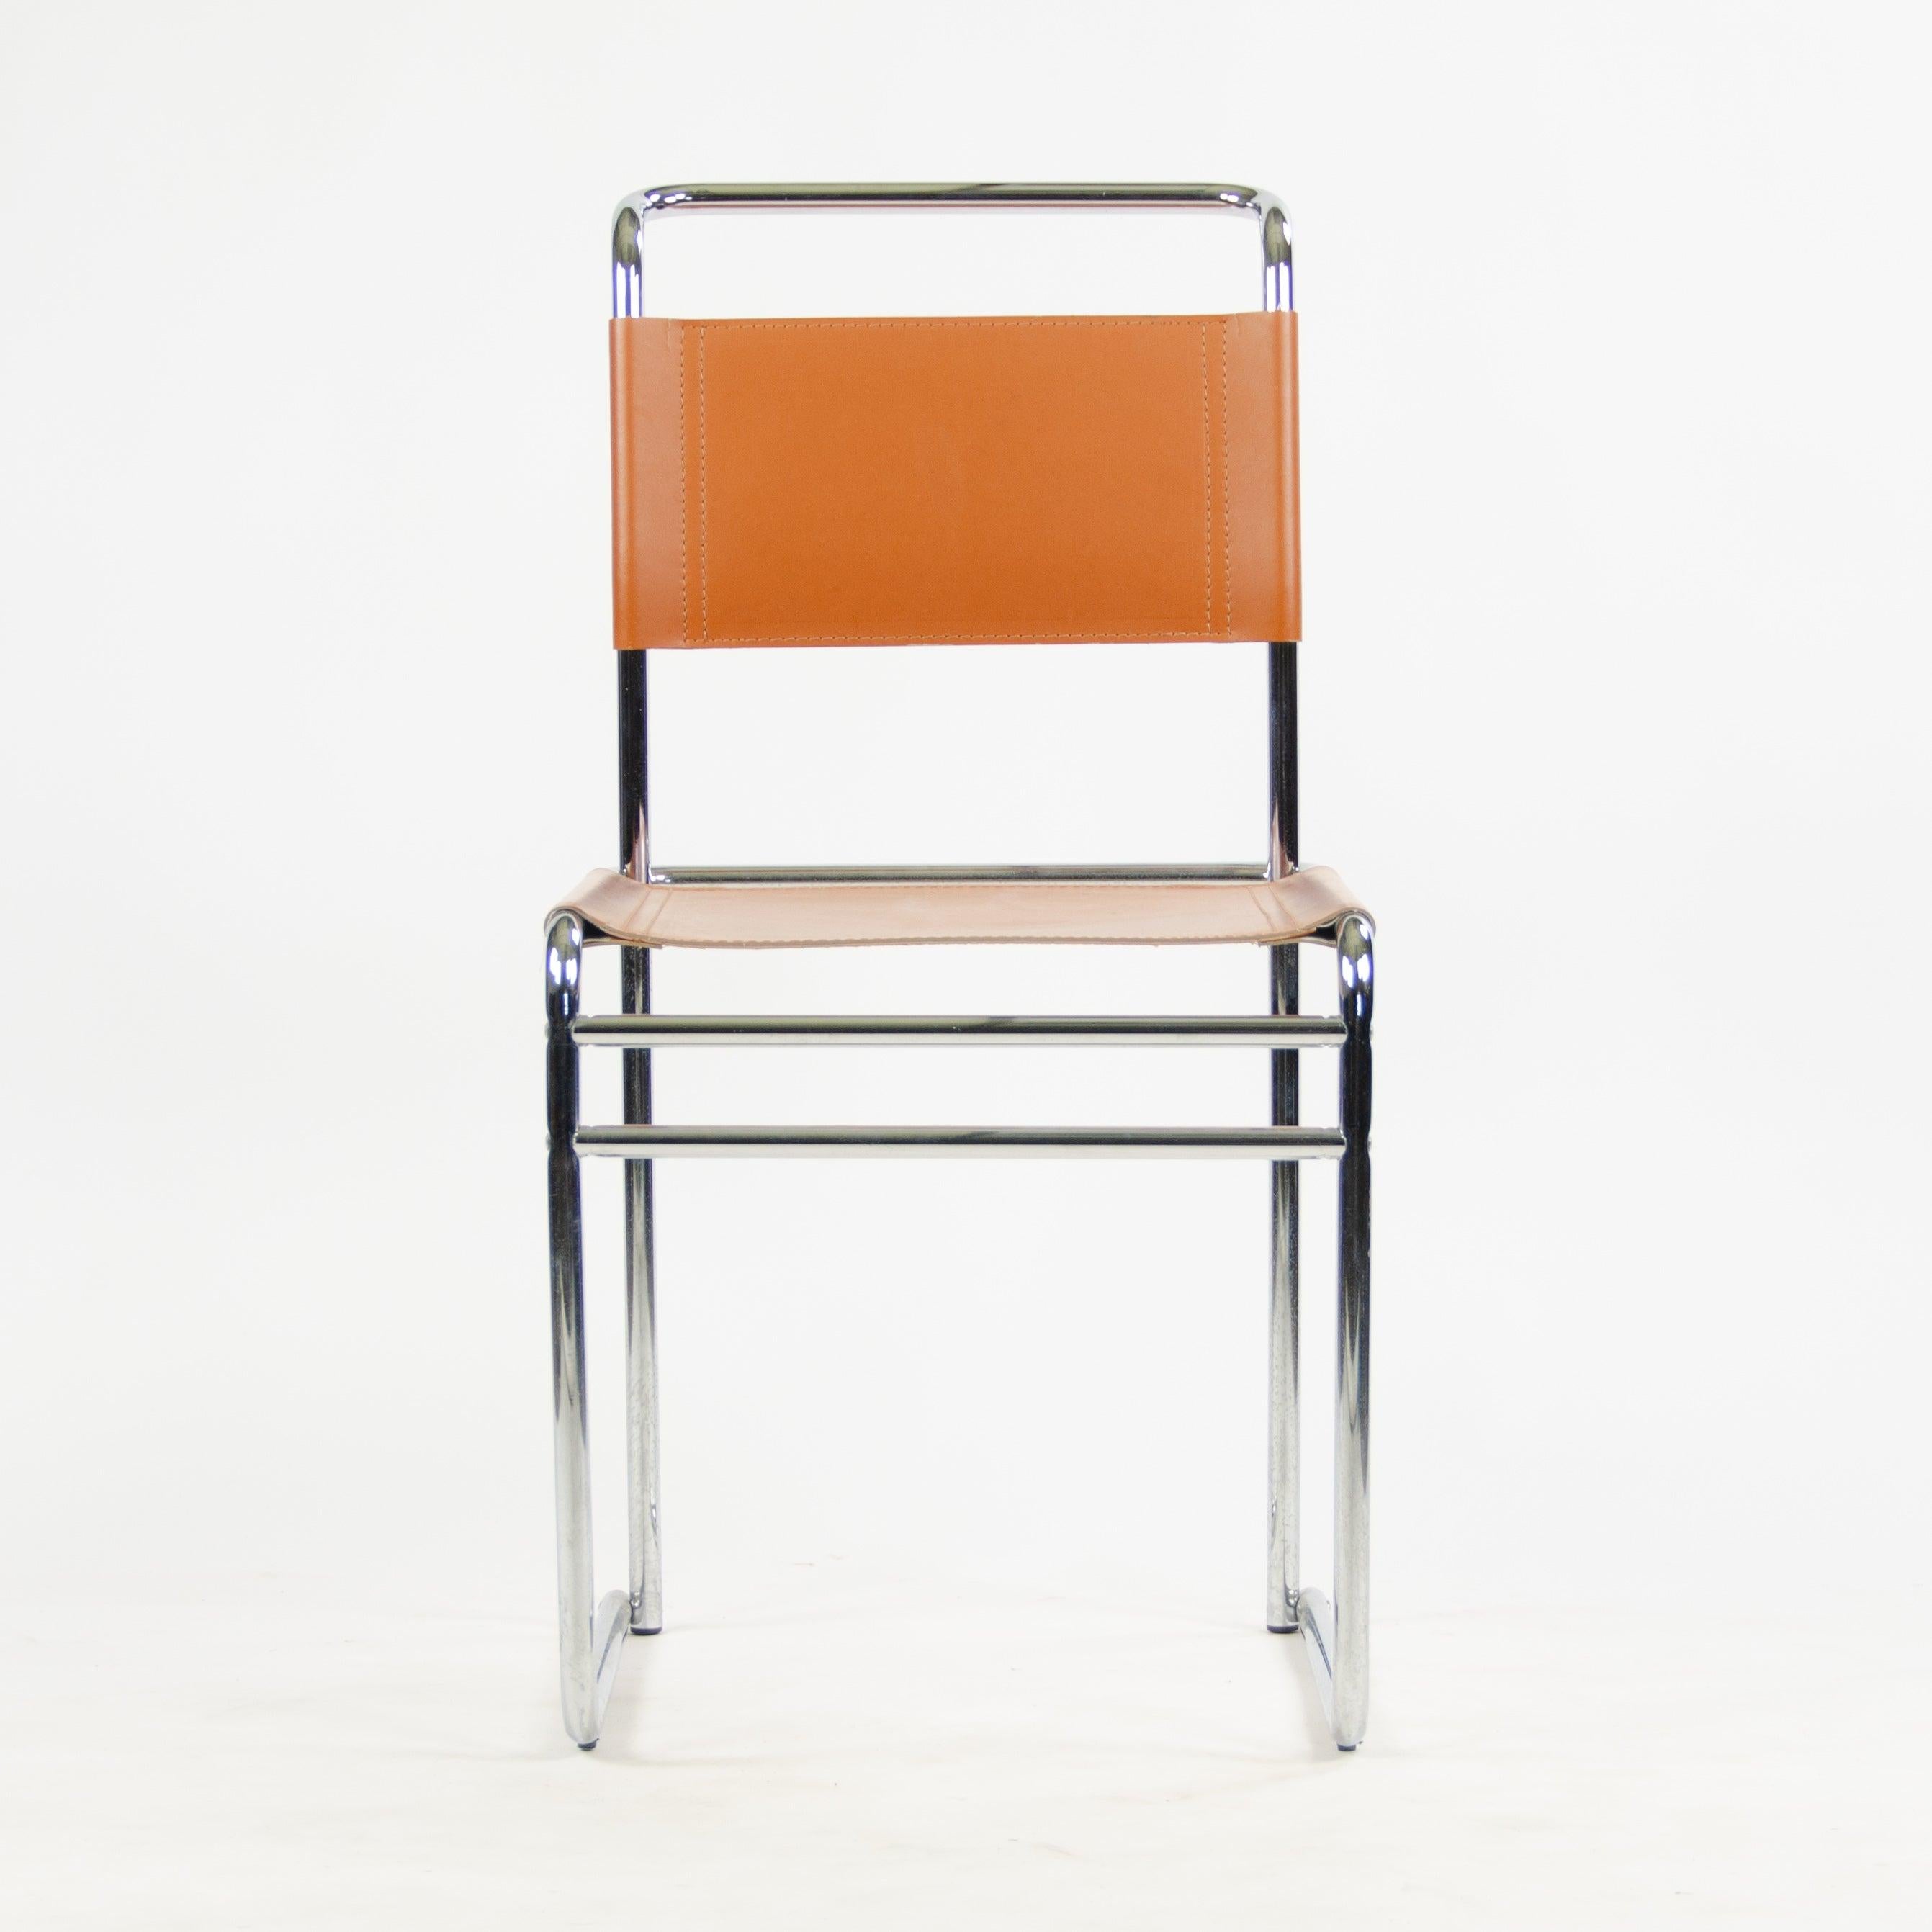 La vente porte sur un ensemble de quatre magnifiques chaises de salle à manger B5, conçues par Marcel Breuer. Ces exemplaires vintage sont dans un état fabuleux avec une sellerie cognac. Ce sont des pièces emblématiques de Breuer et elles sont très